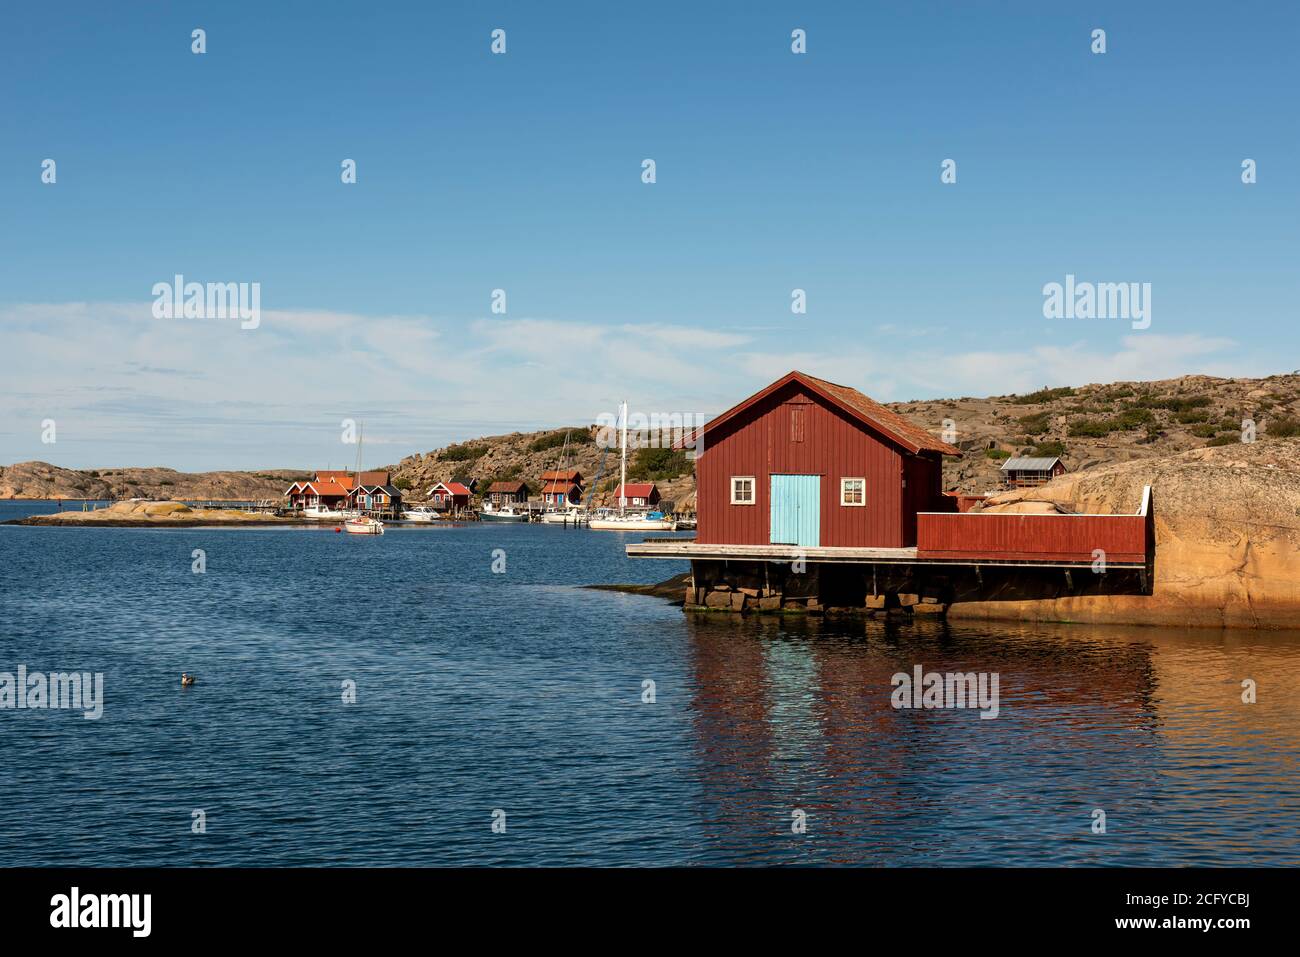 Una casa-barca tradizionale rossa a Heestrand, Tanum, Bohuslän Foto Stock